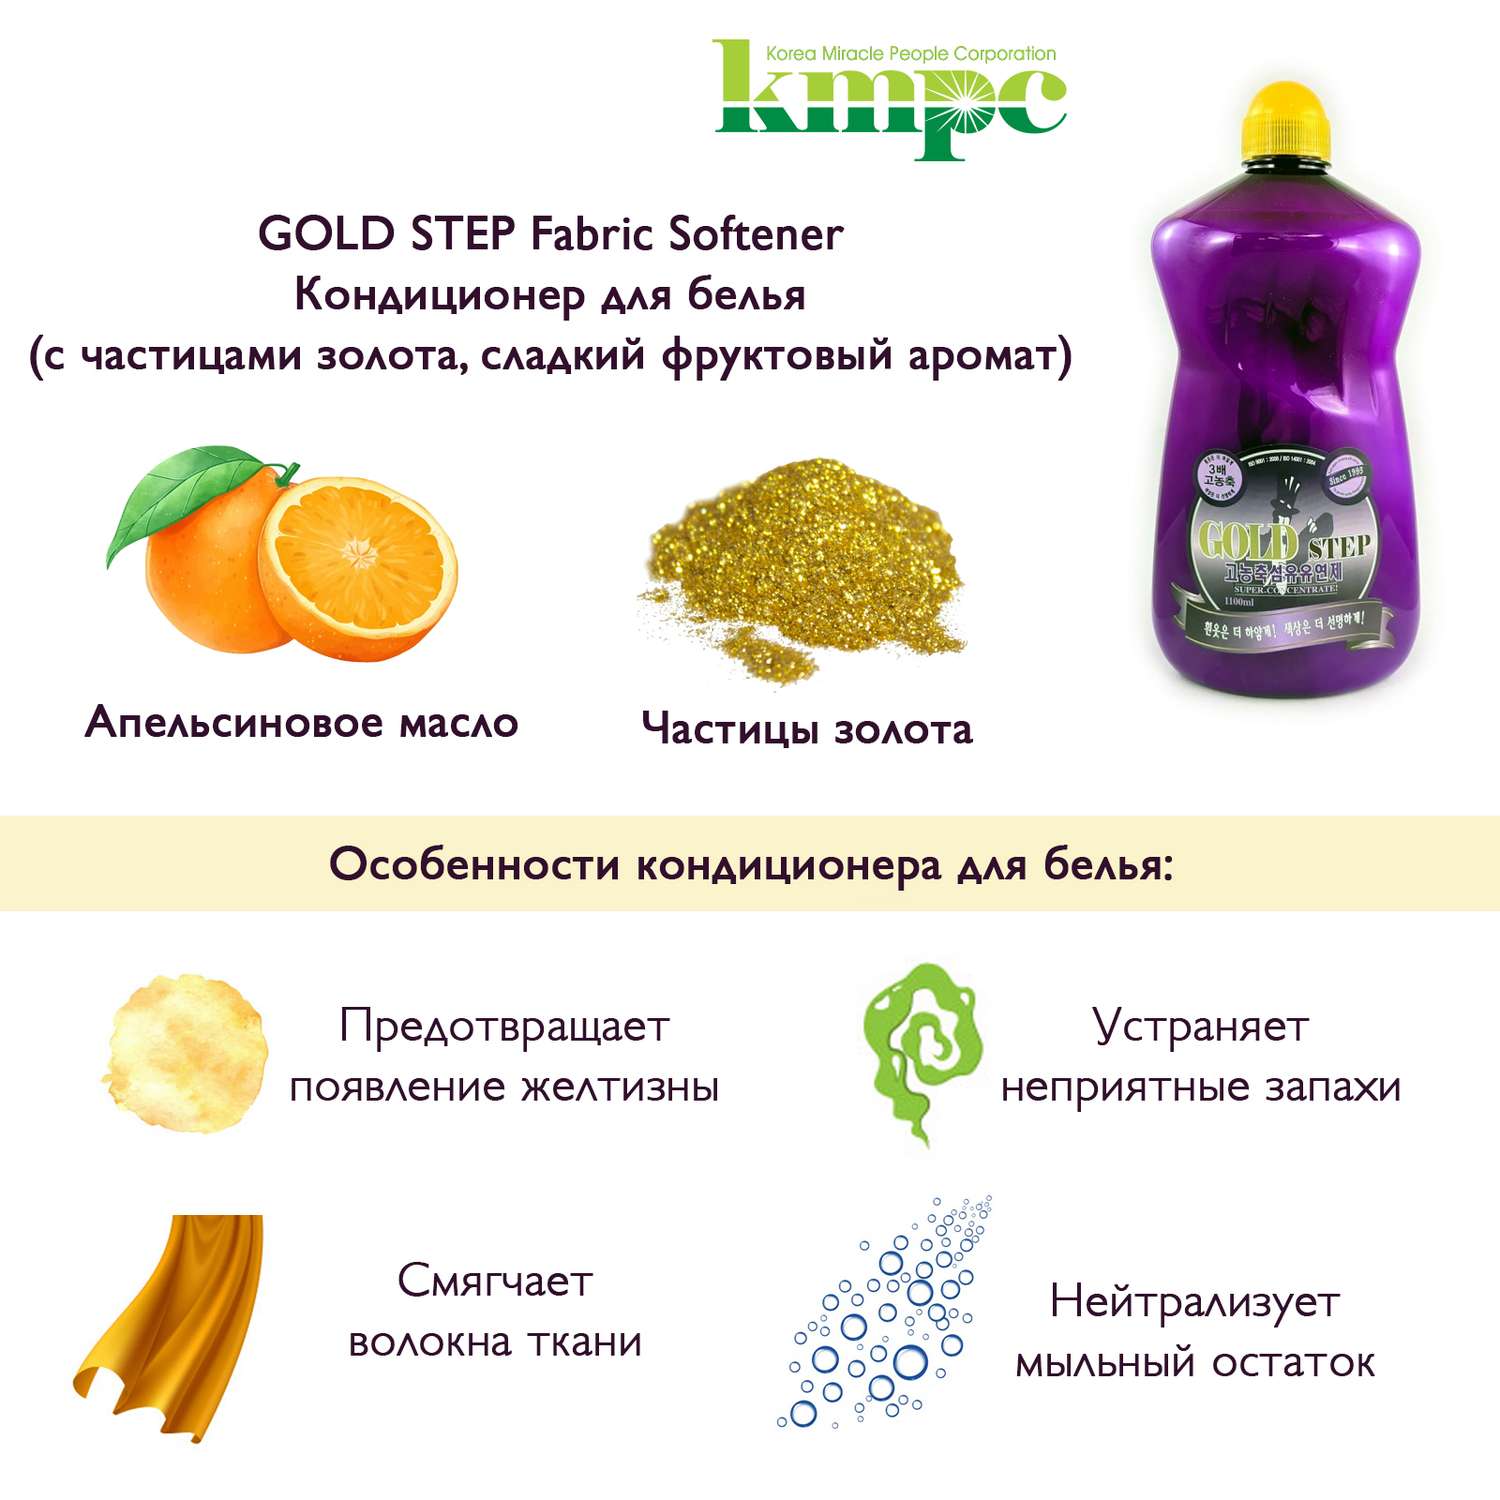 Кондиционер для белья KMPC с частицами золота сладкий фруктовый аромат 1100 мл 582484 - фото 2